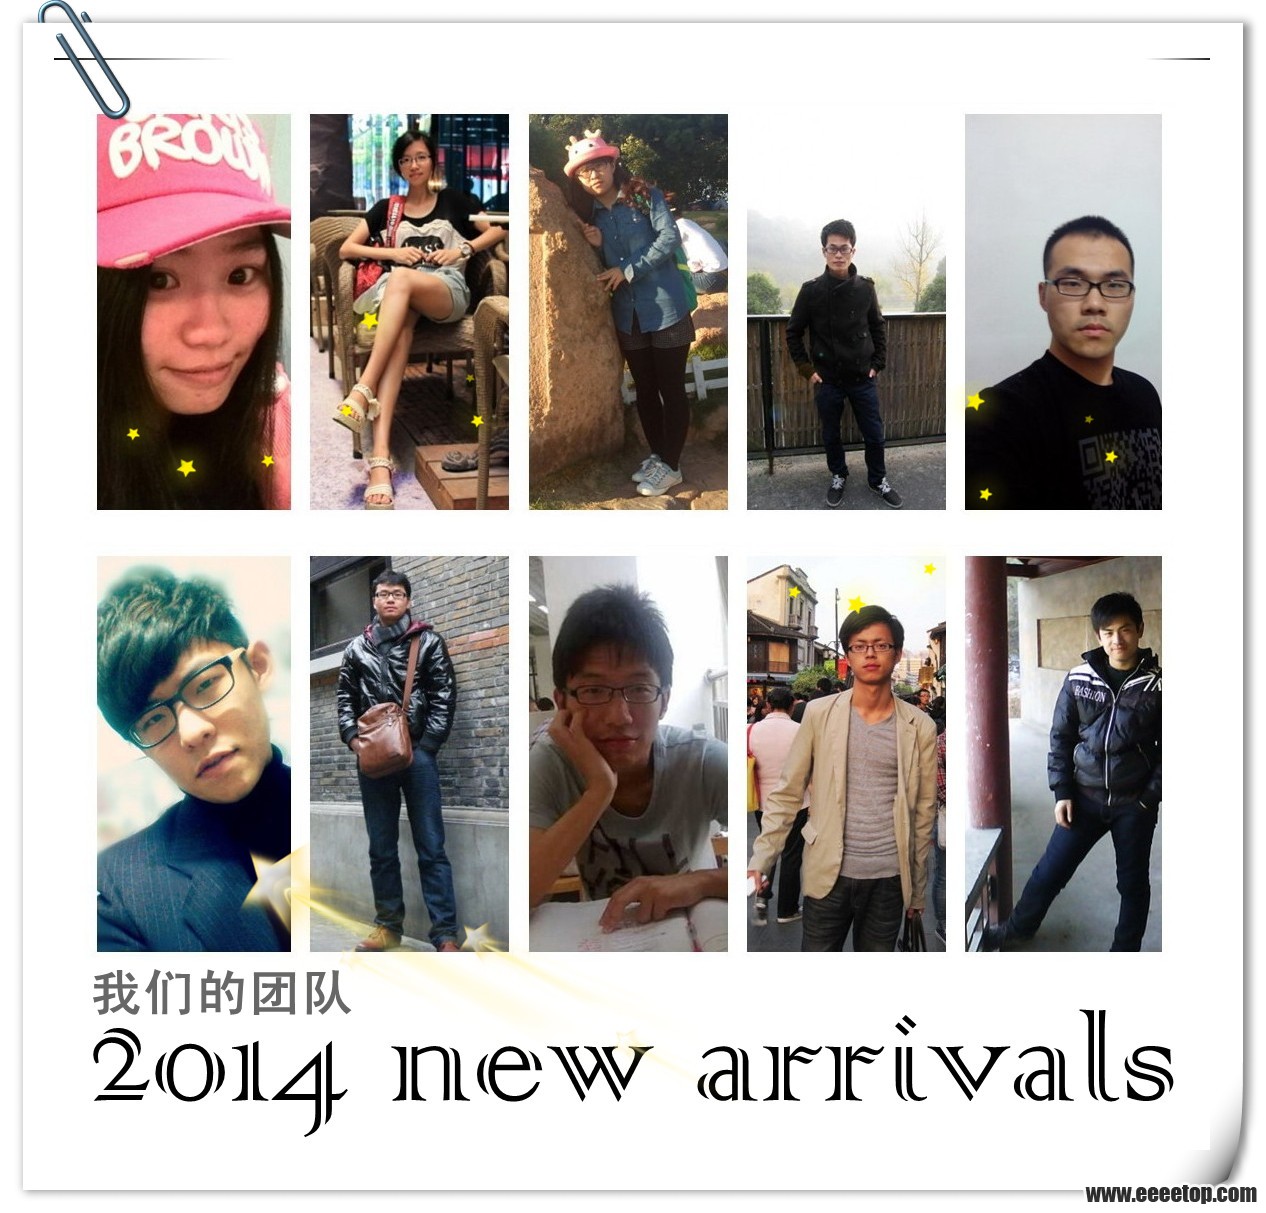 2014 new arrivals.jpg